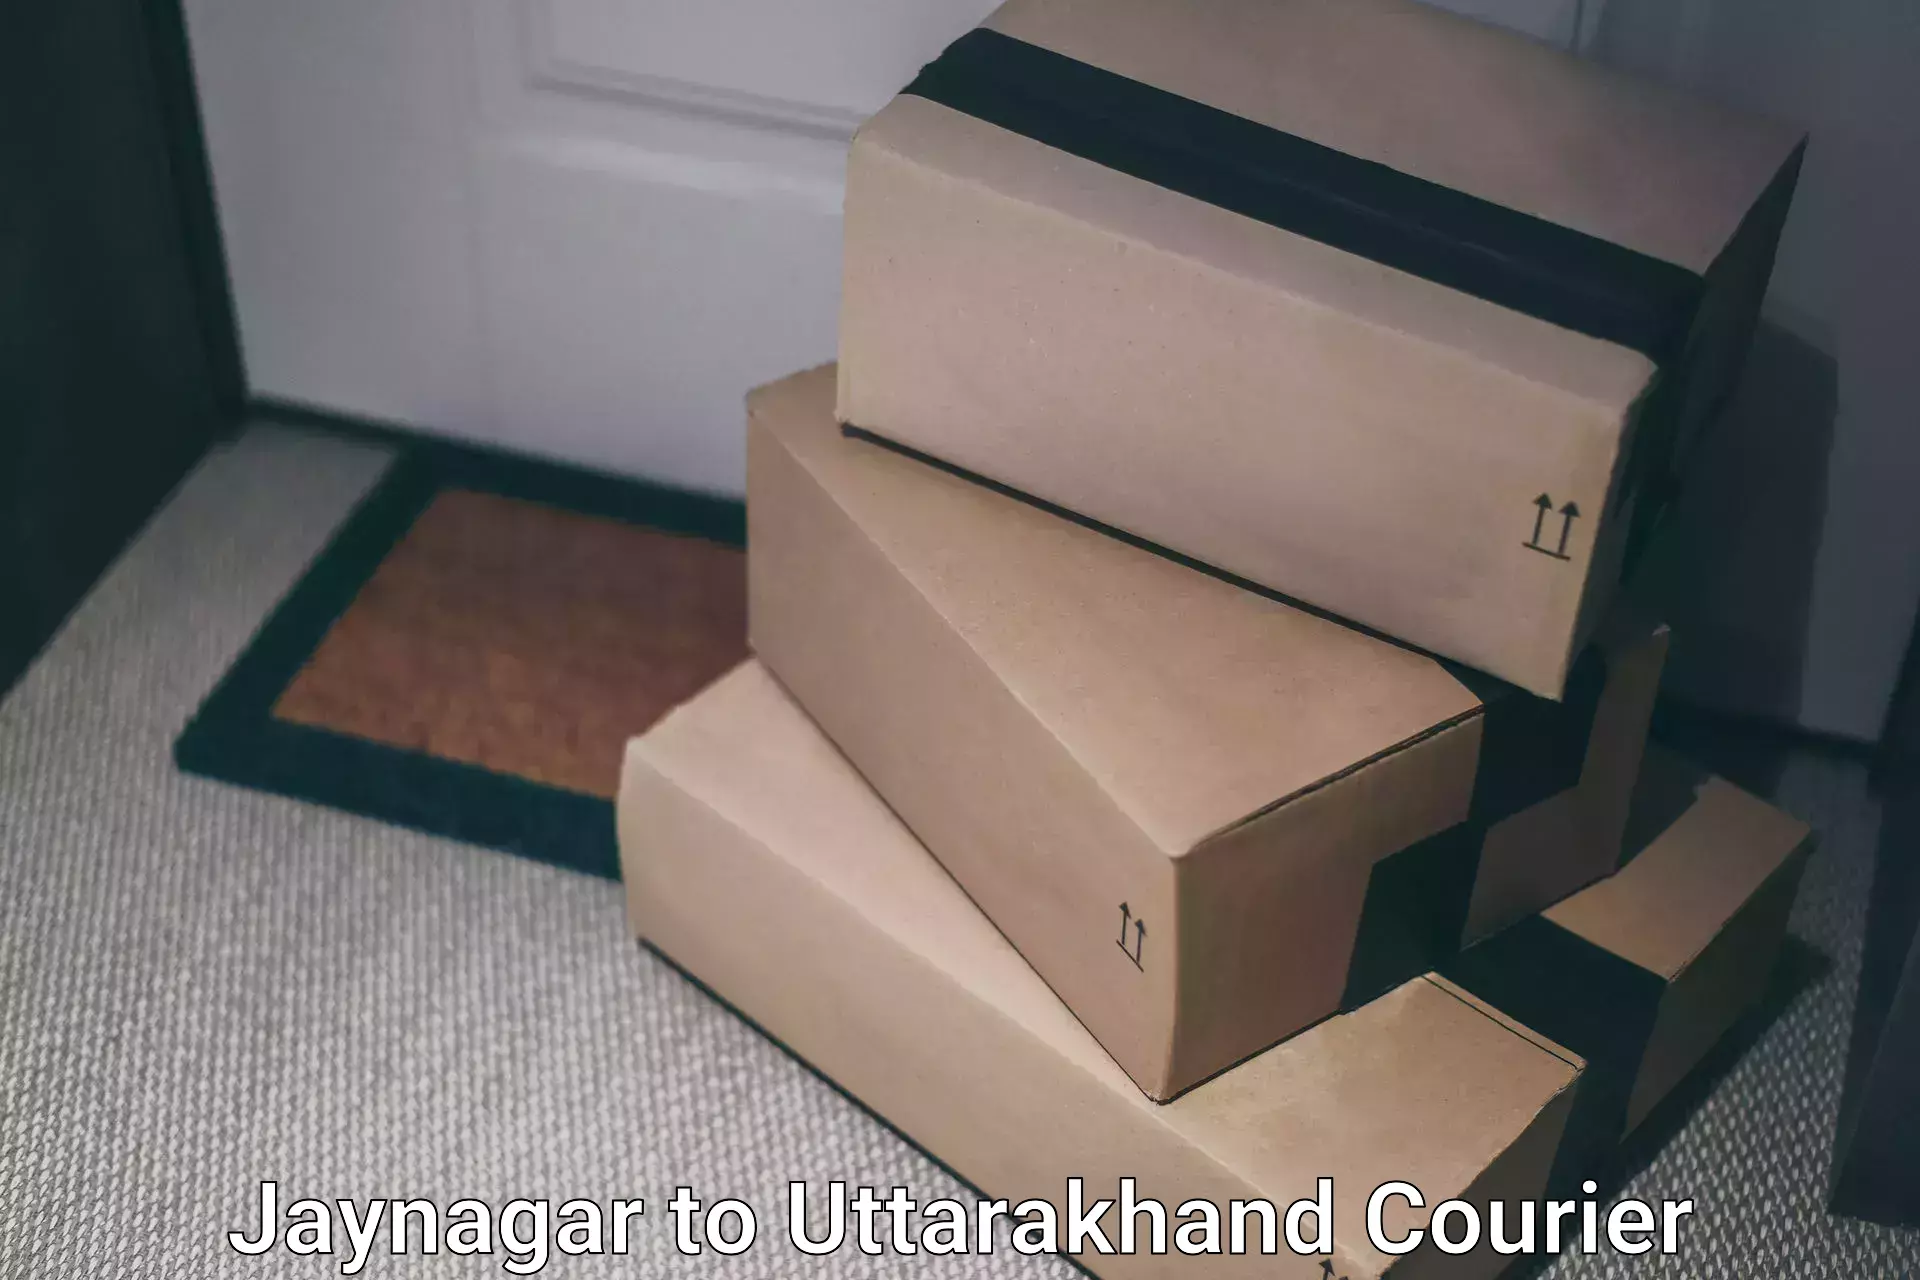 High-capacity parcel service Jaynagar to Lansdowne